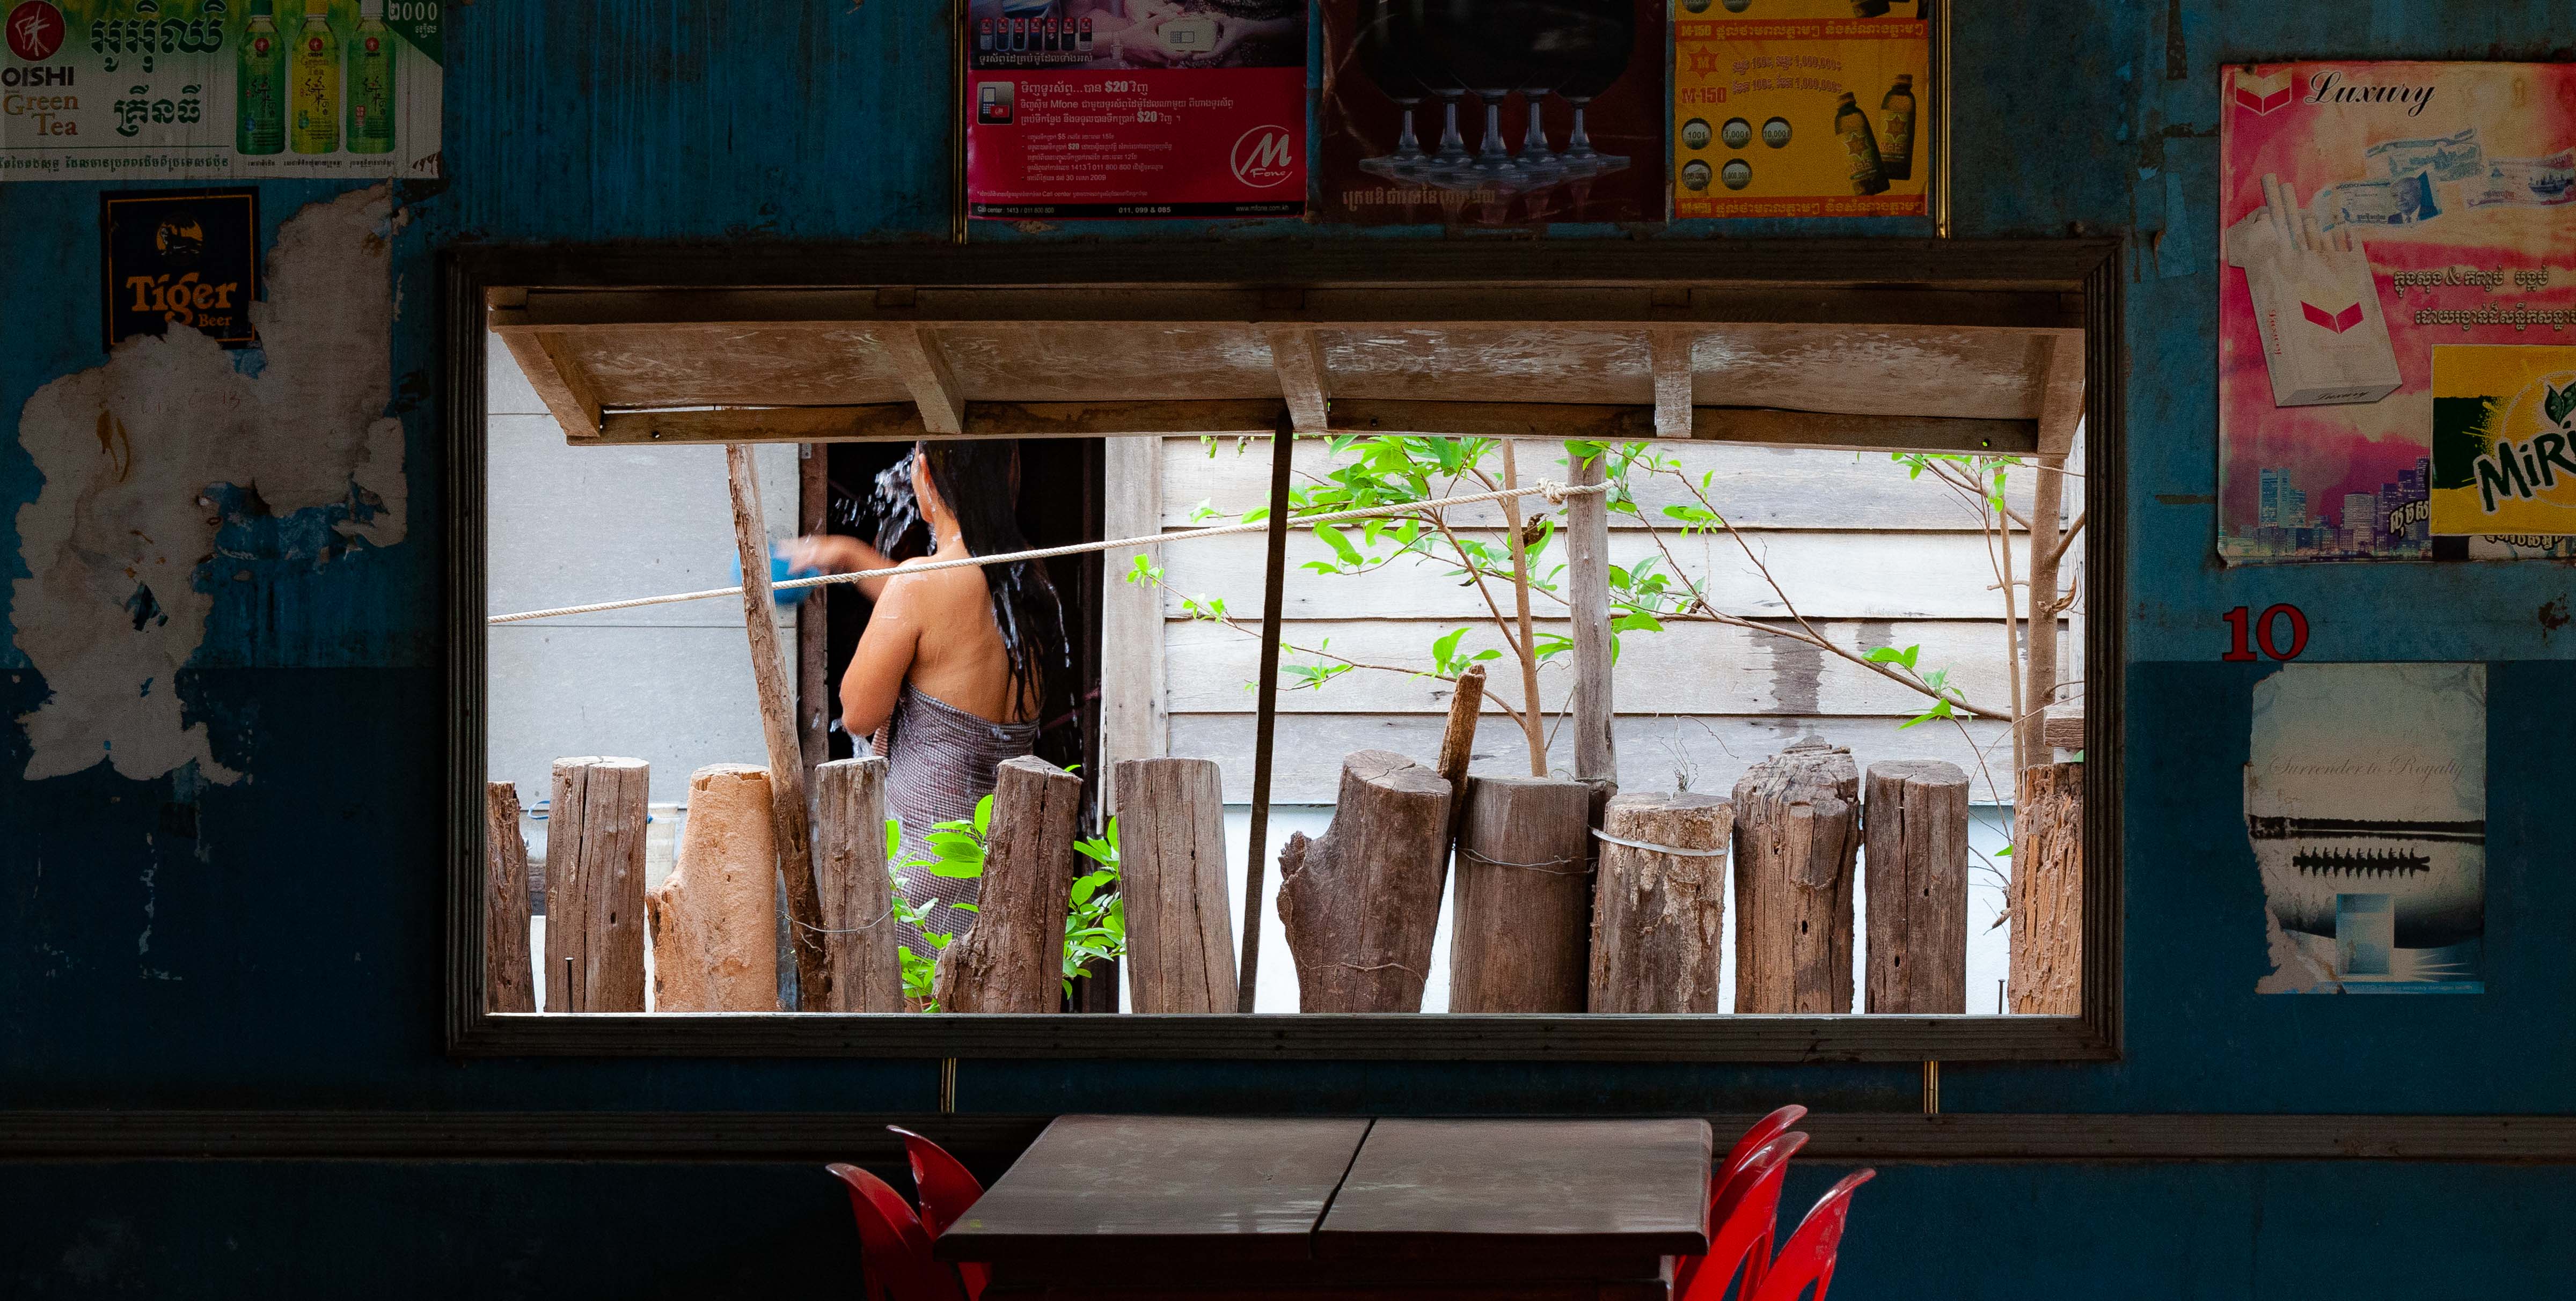 Cambodia, Otdar Mean Chey Prov, Bath Behind Cafe, 2011, IMG 0095